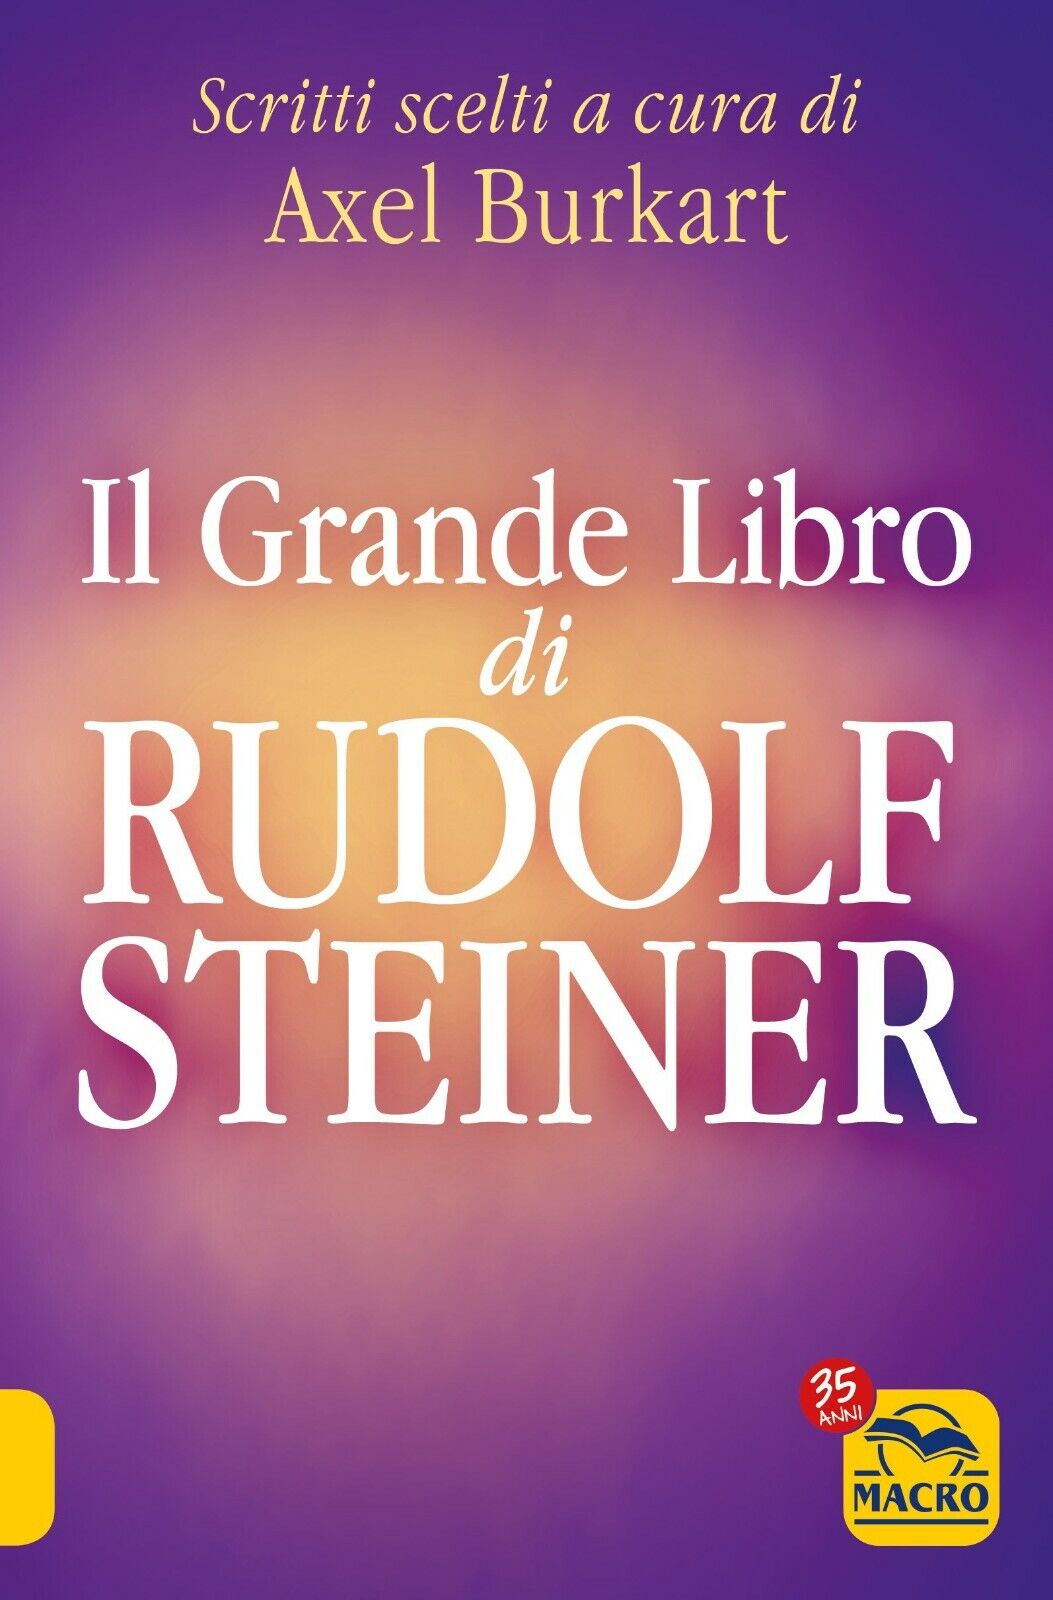 Il grande libro di Rudolf Steiner. Scritti scelti di A. Burkart,  2021,  Macro E